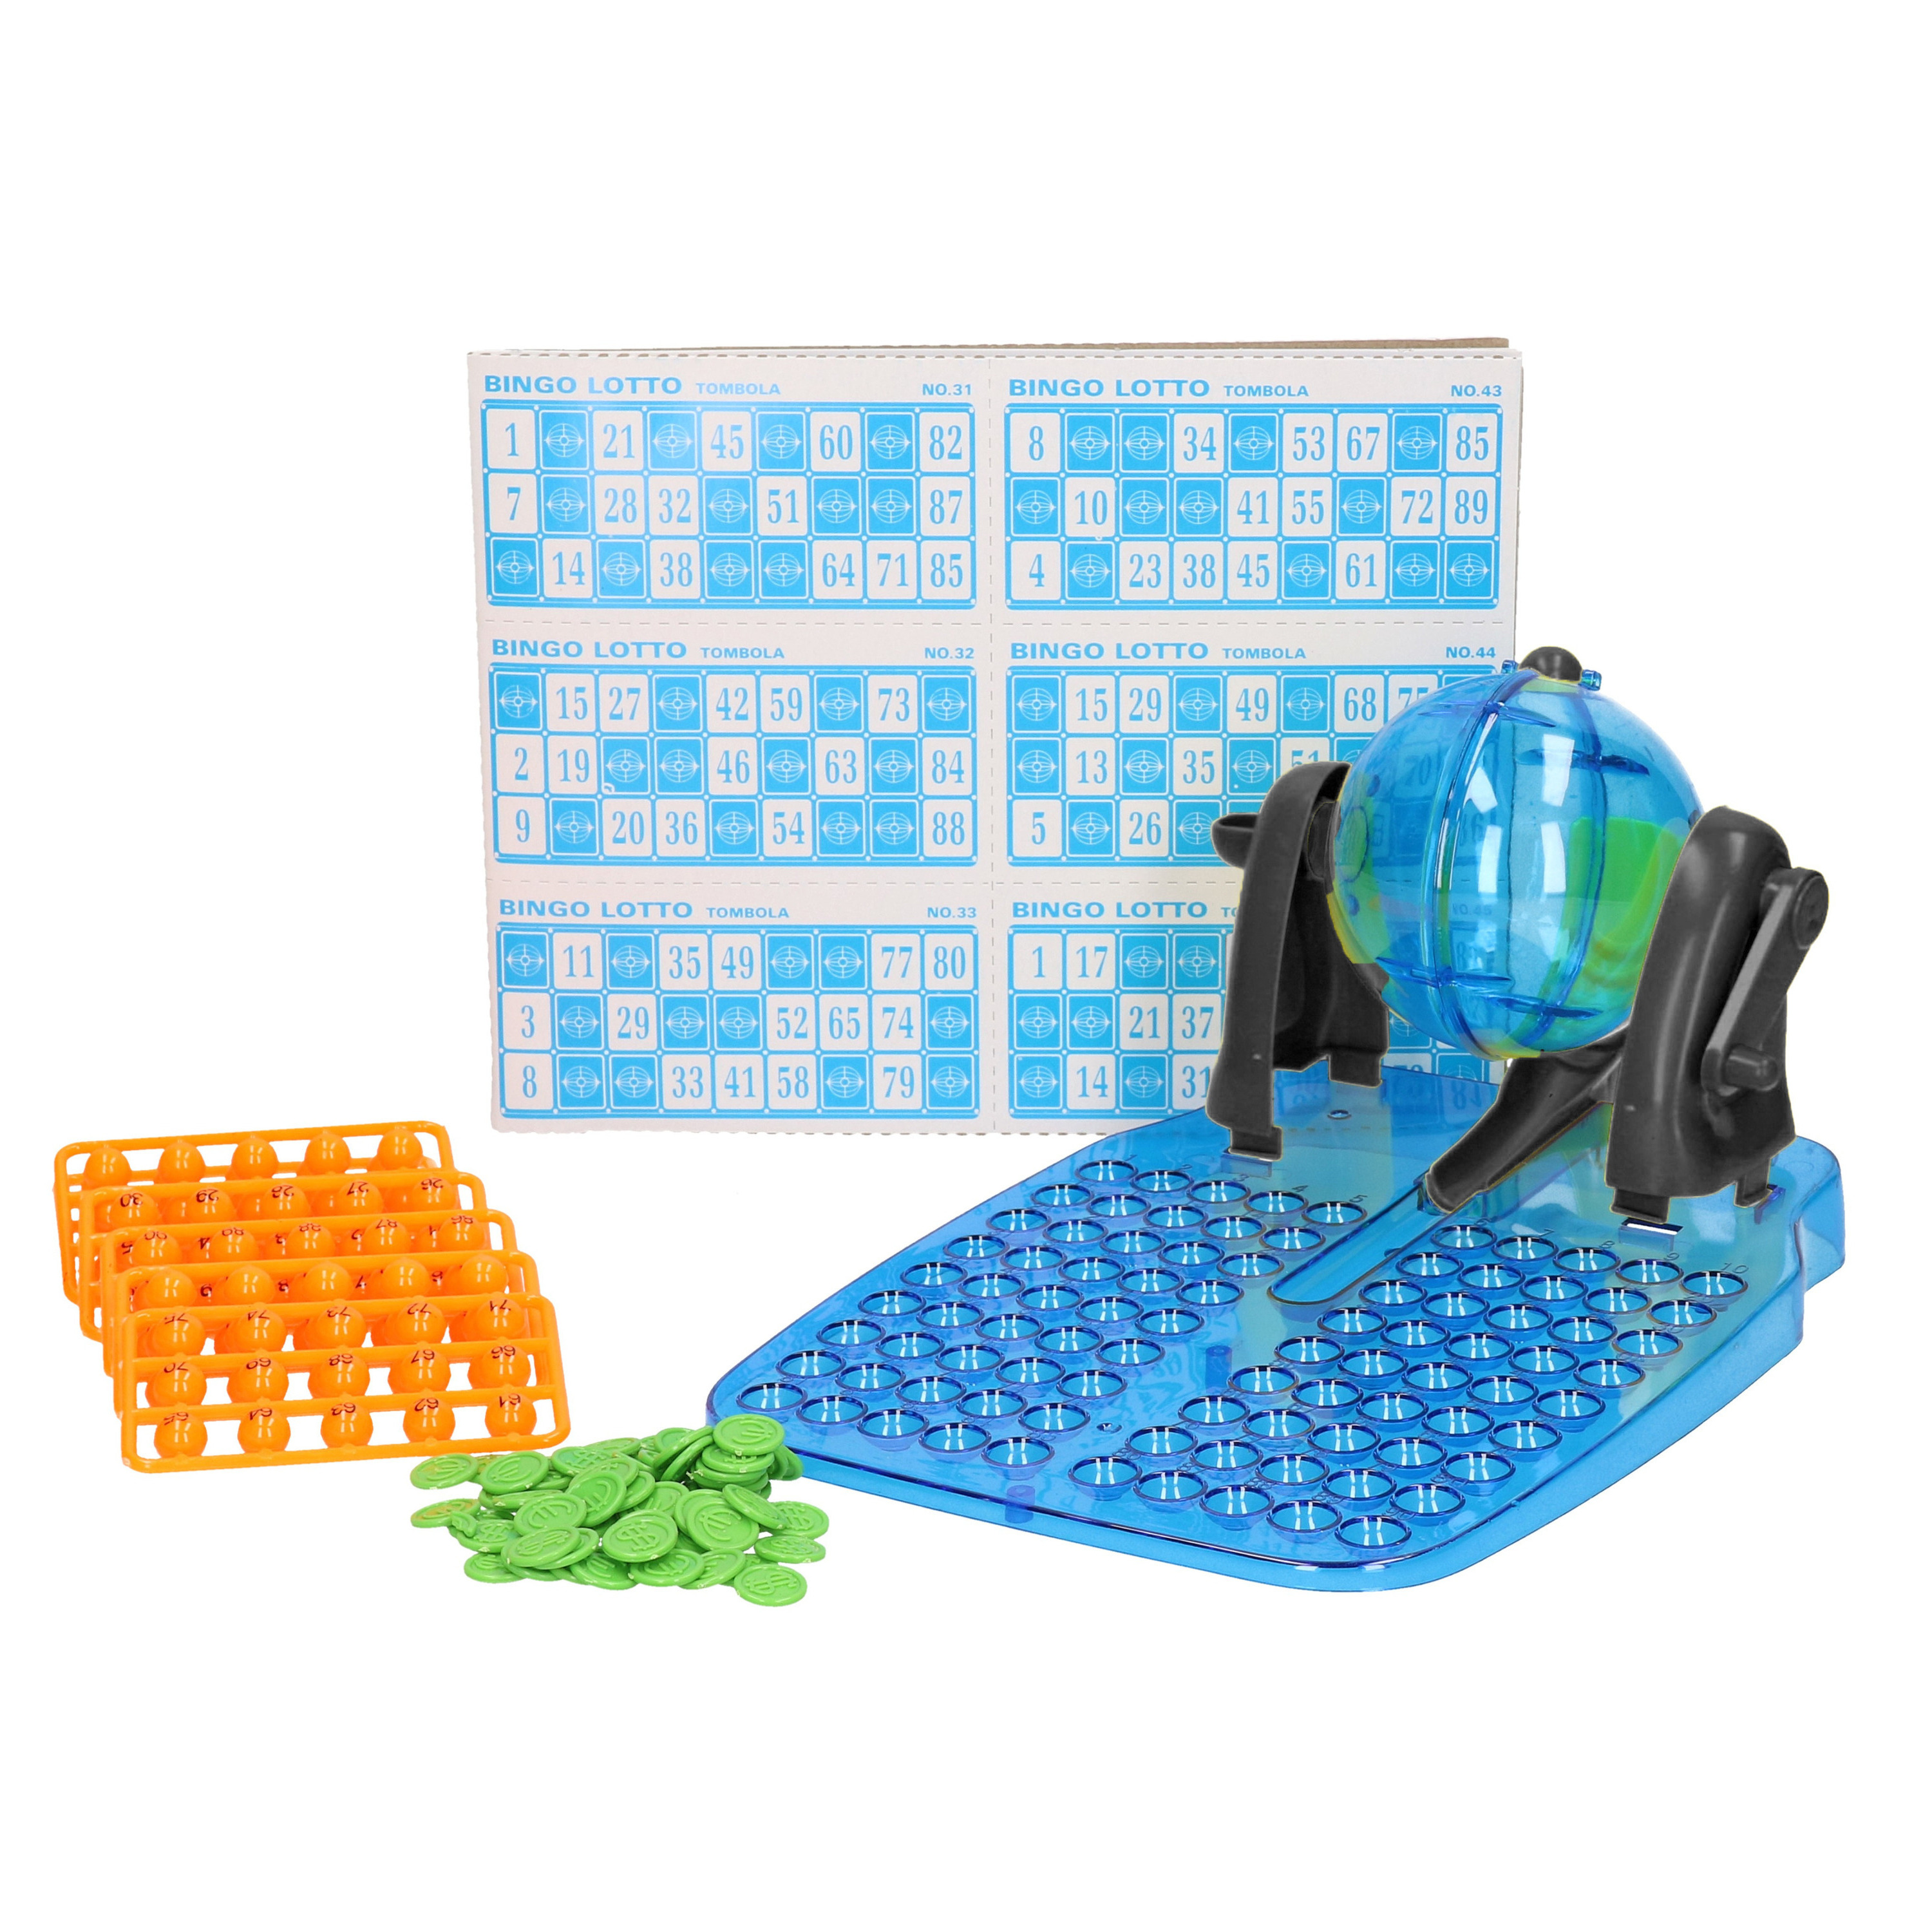 Bingo spel-Bingomolen blauw-zwart complete set nummers 1-90 48 kaarten